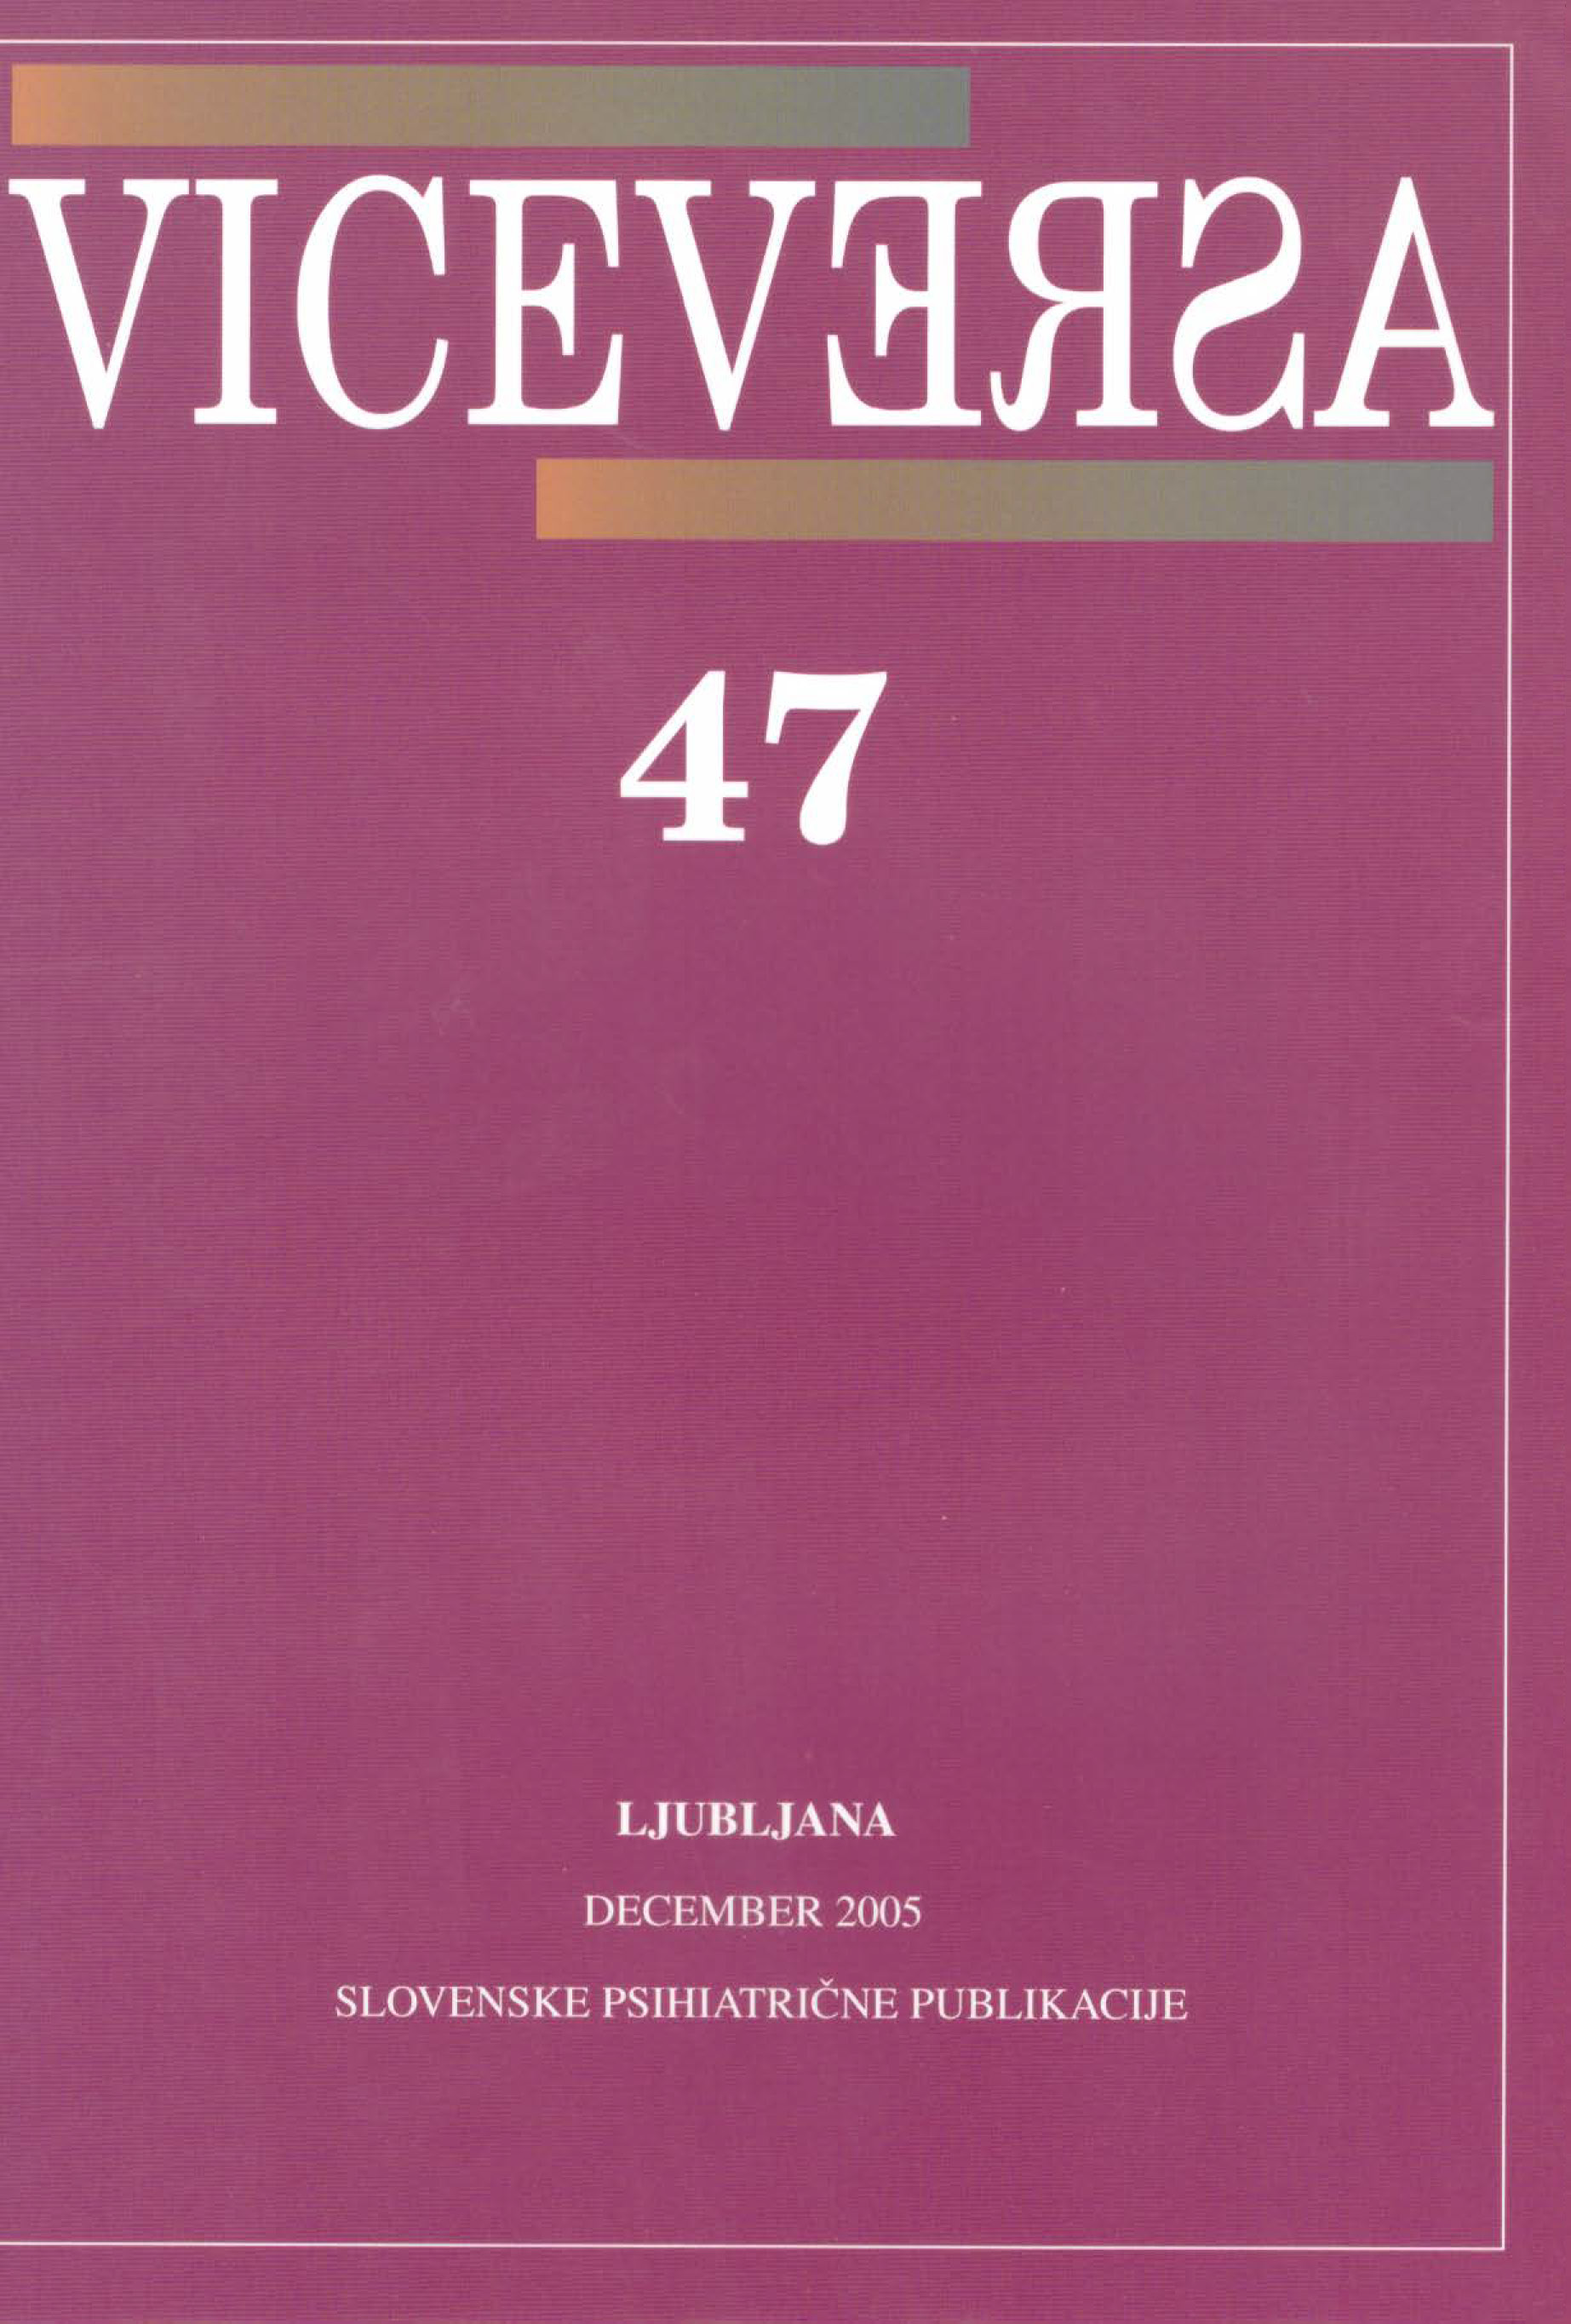 					Poglej Letn. 14 Št. 47 (2005): VICEVERSA
				